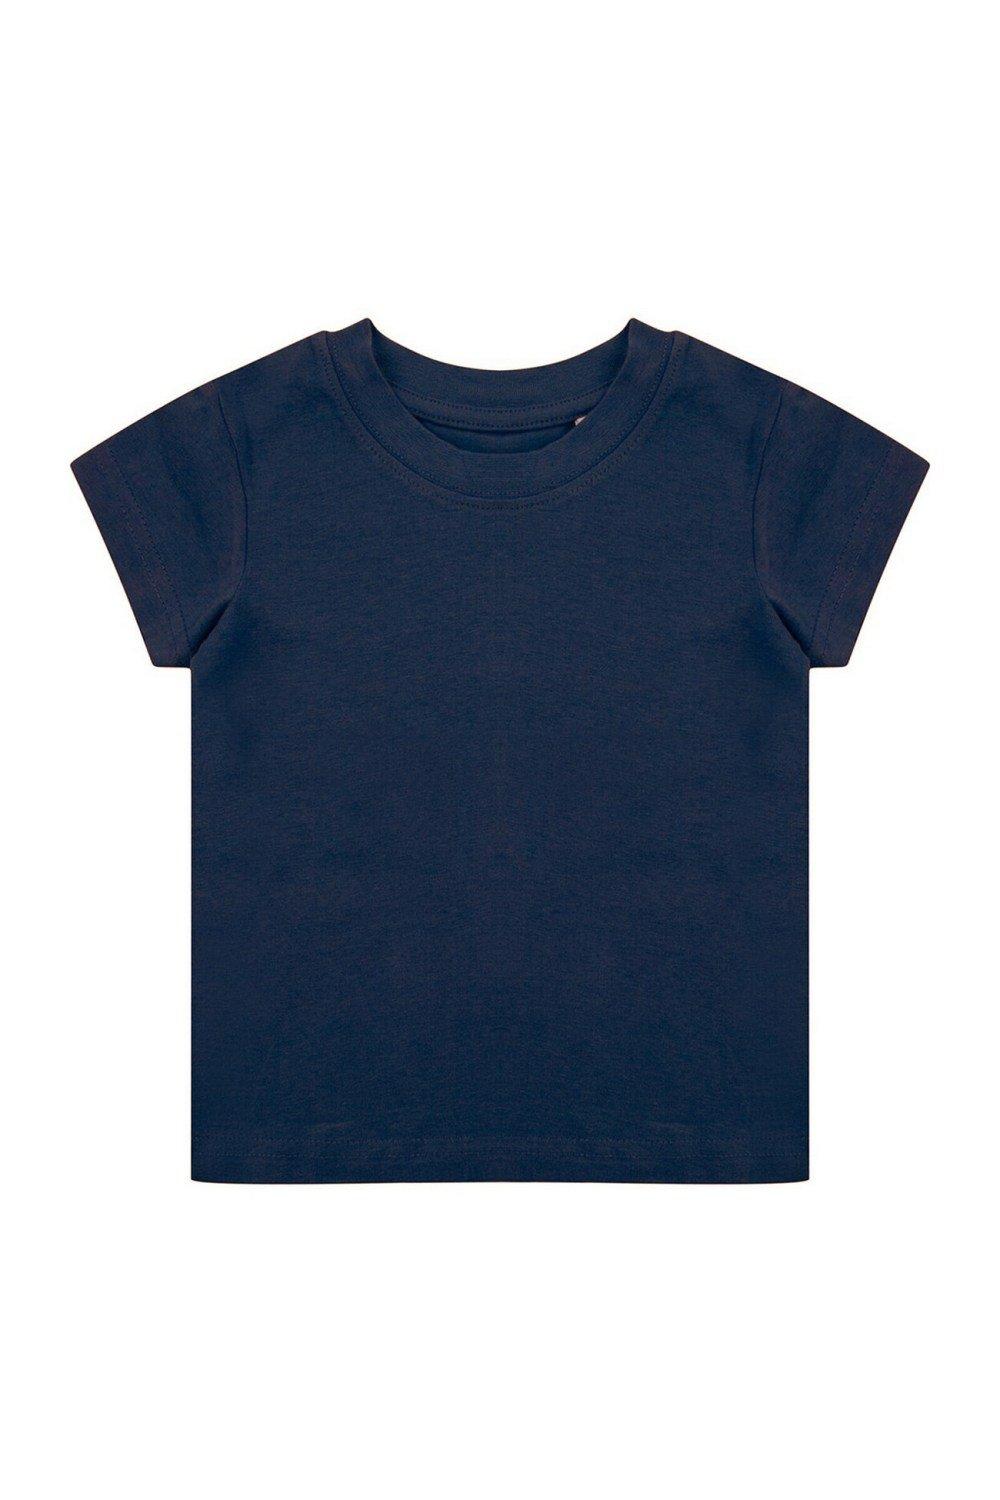 Органическая футболка Larkwood, темно-синий органическая футболка larkwood натуральный